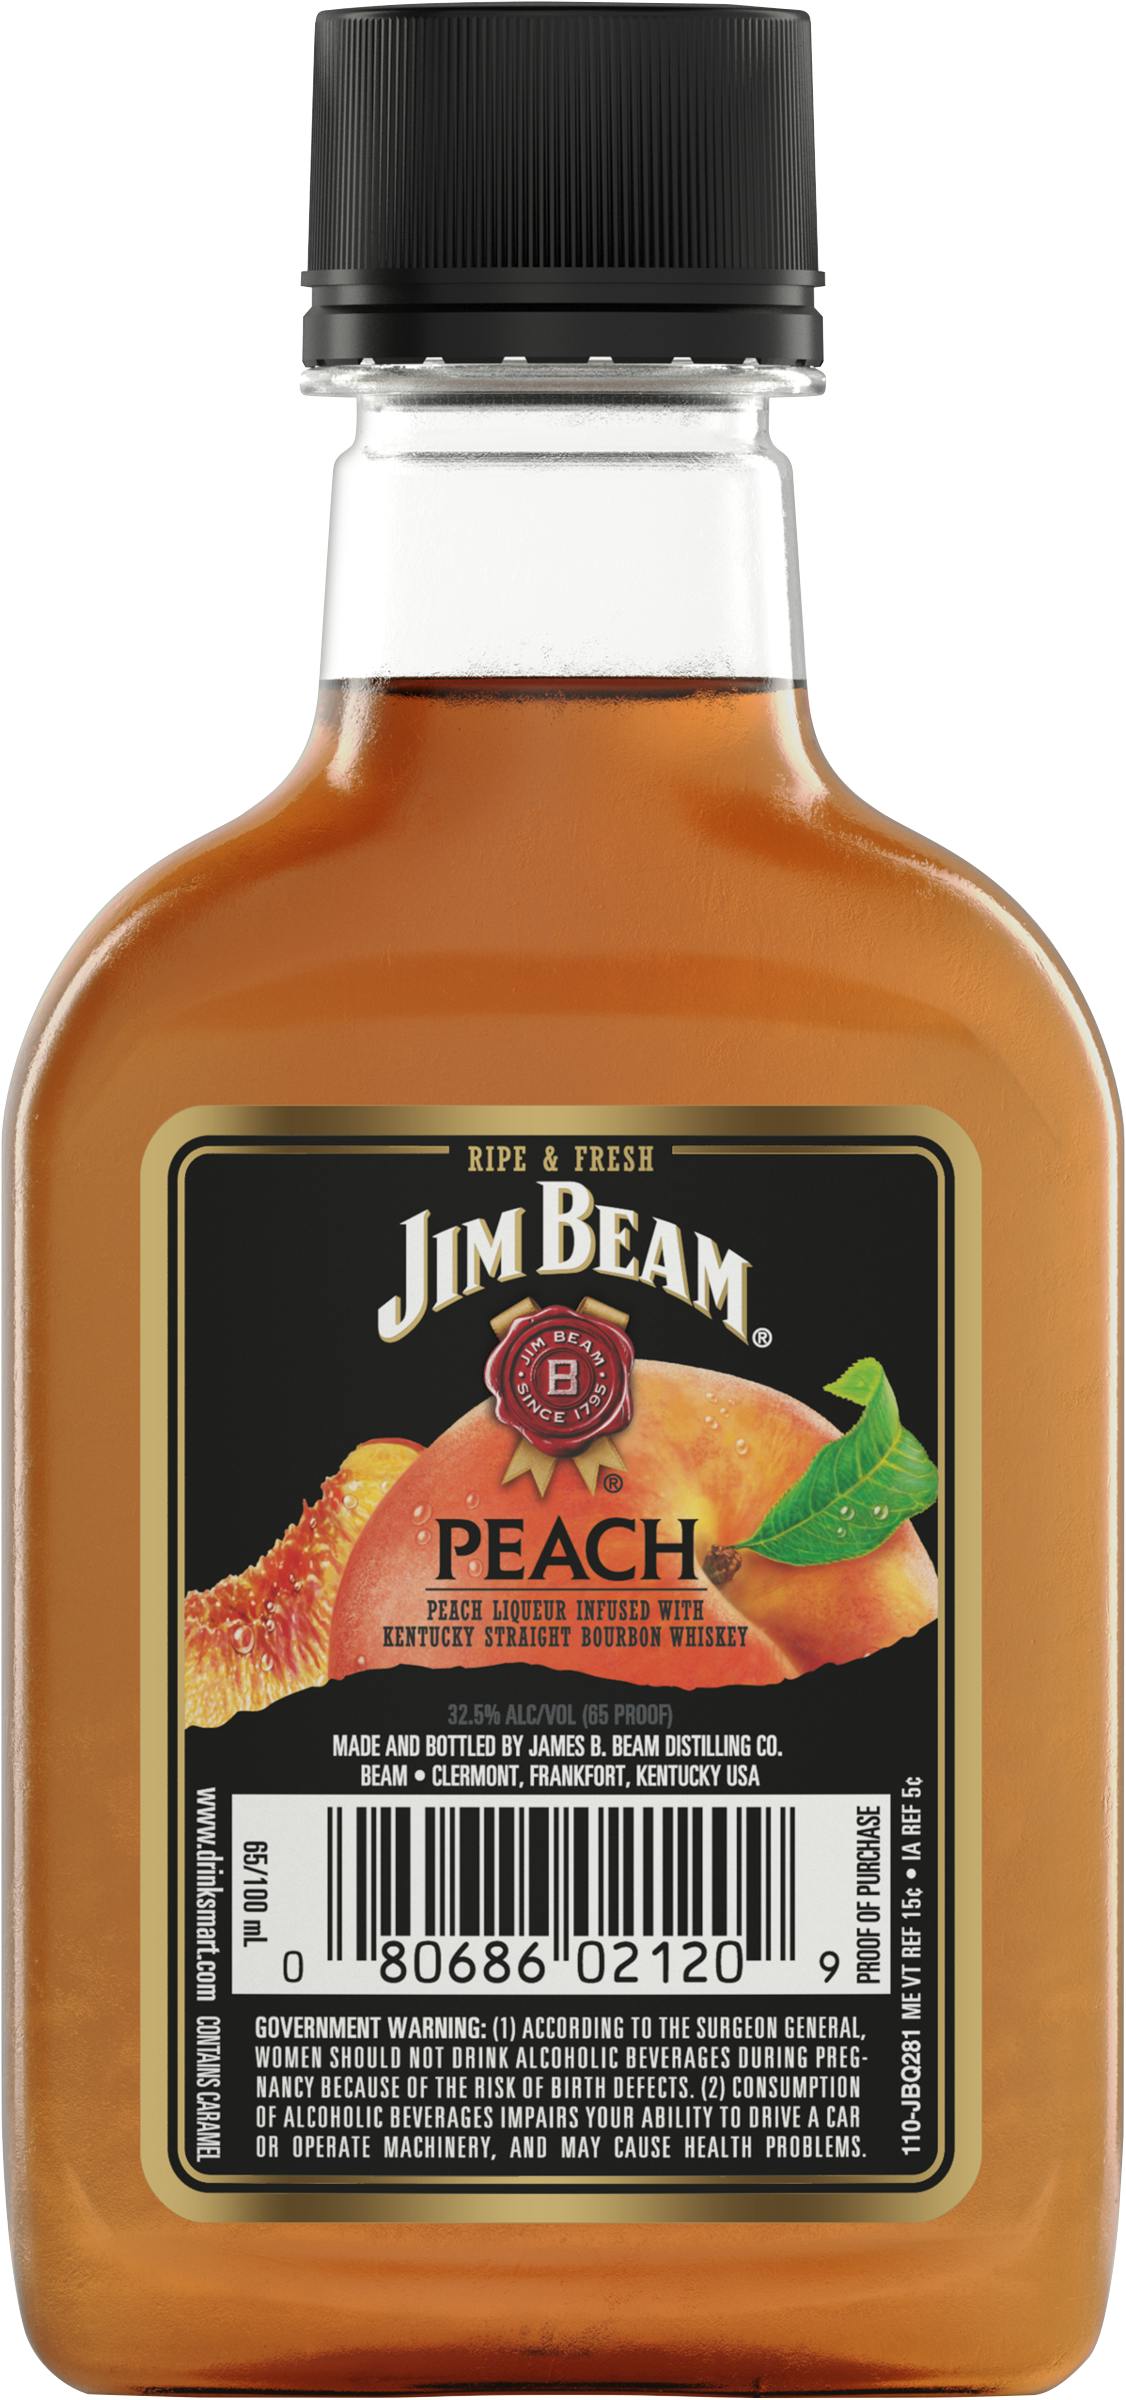 Jim Beam 100ml - Wine Peach Liquor Argonaut 